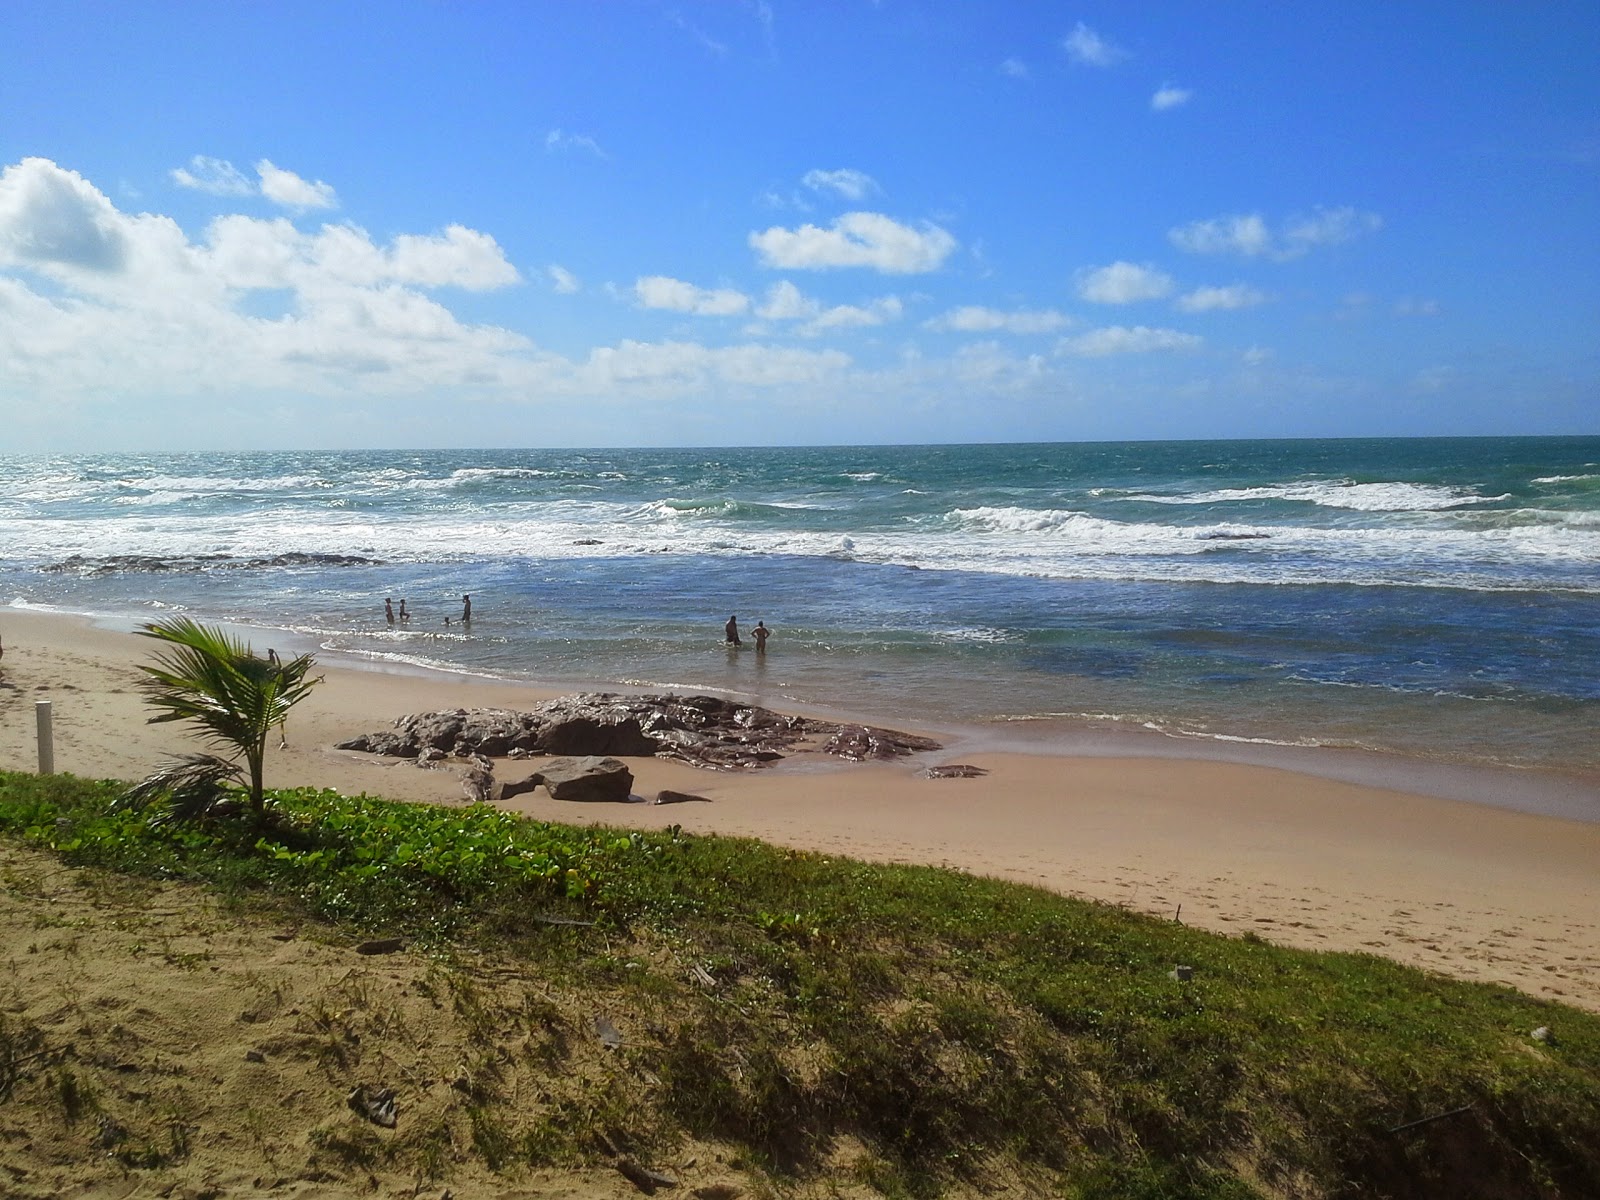 Praia da Torra'in fotoğrafı parlak kum yüzey ile